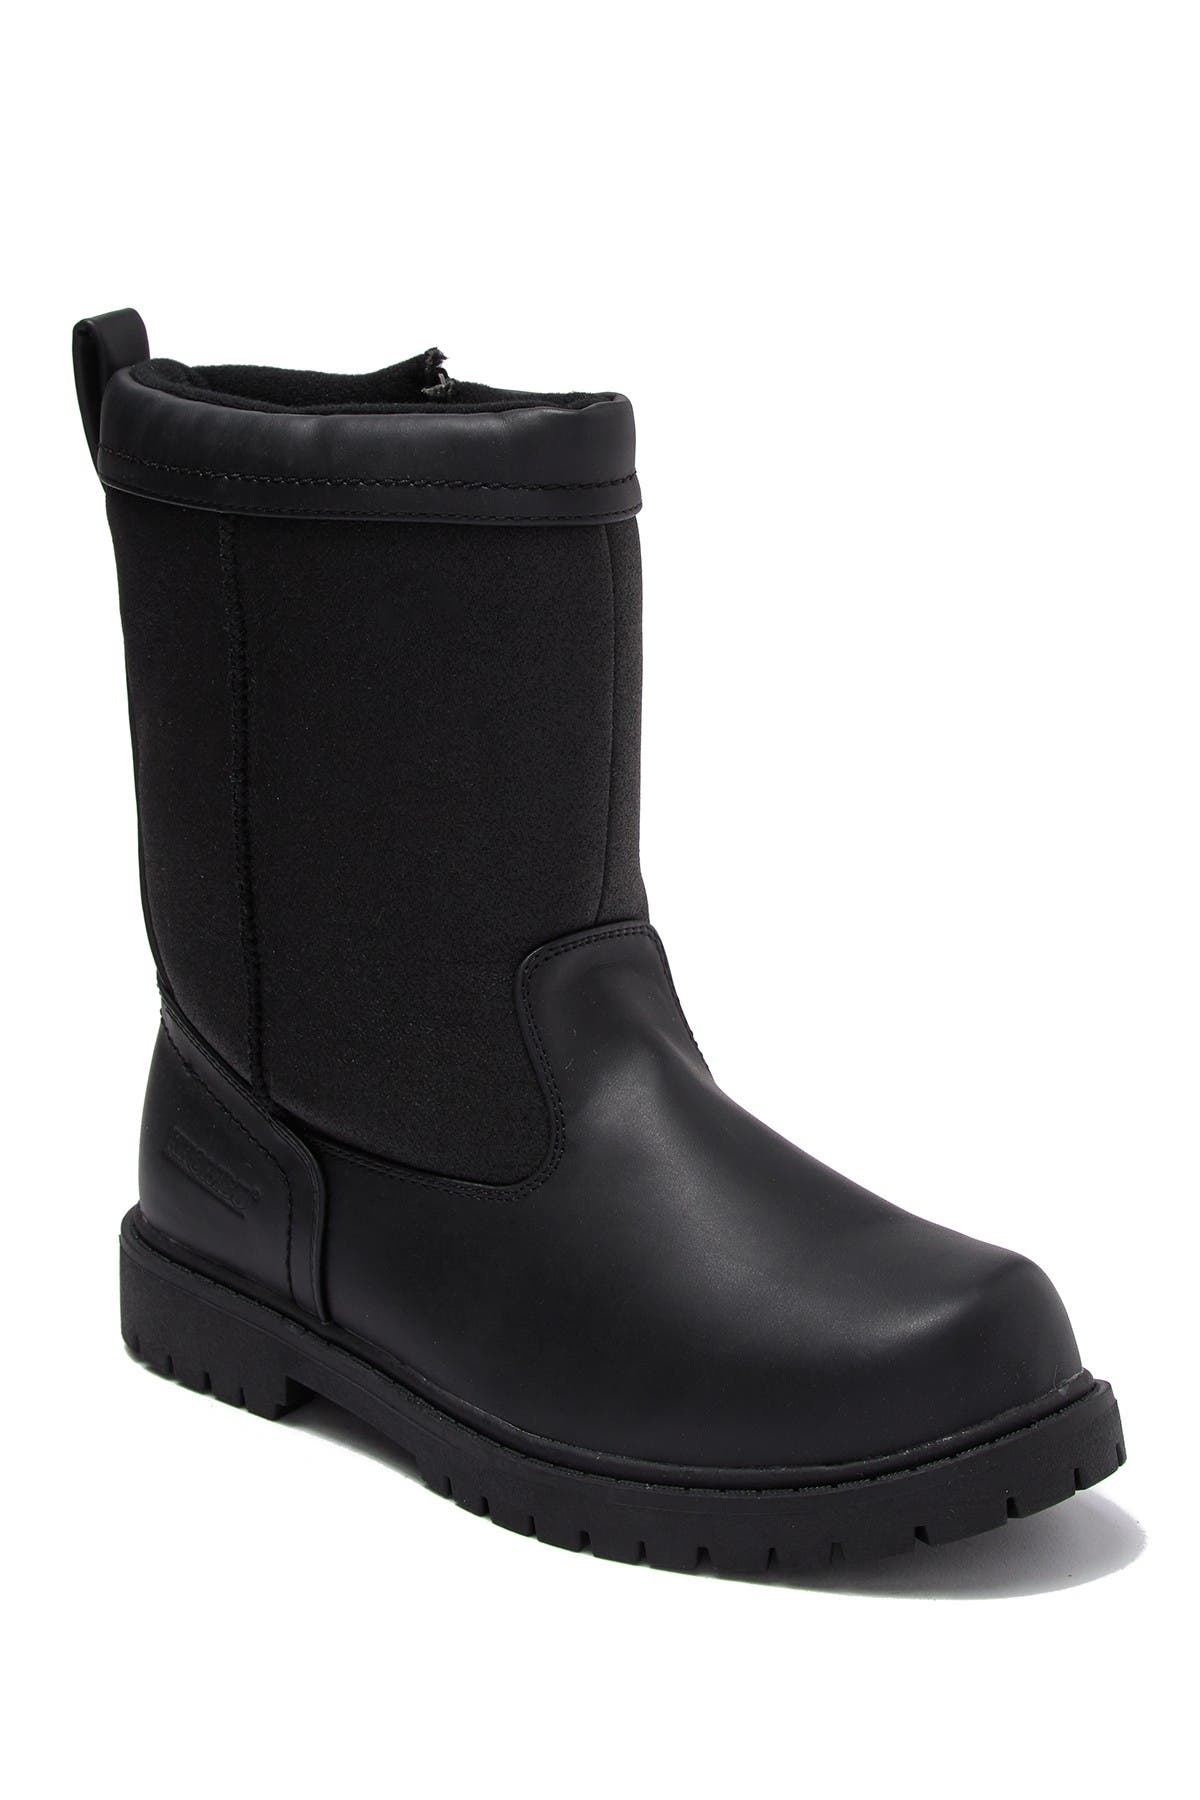 waterproof boots nordstrom